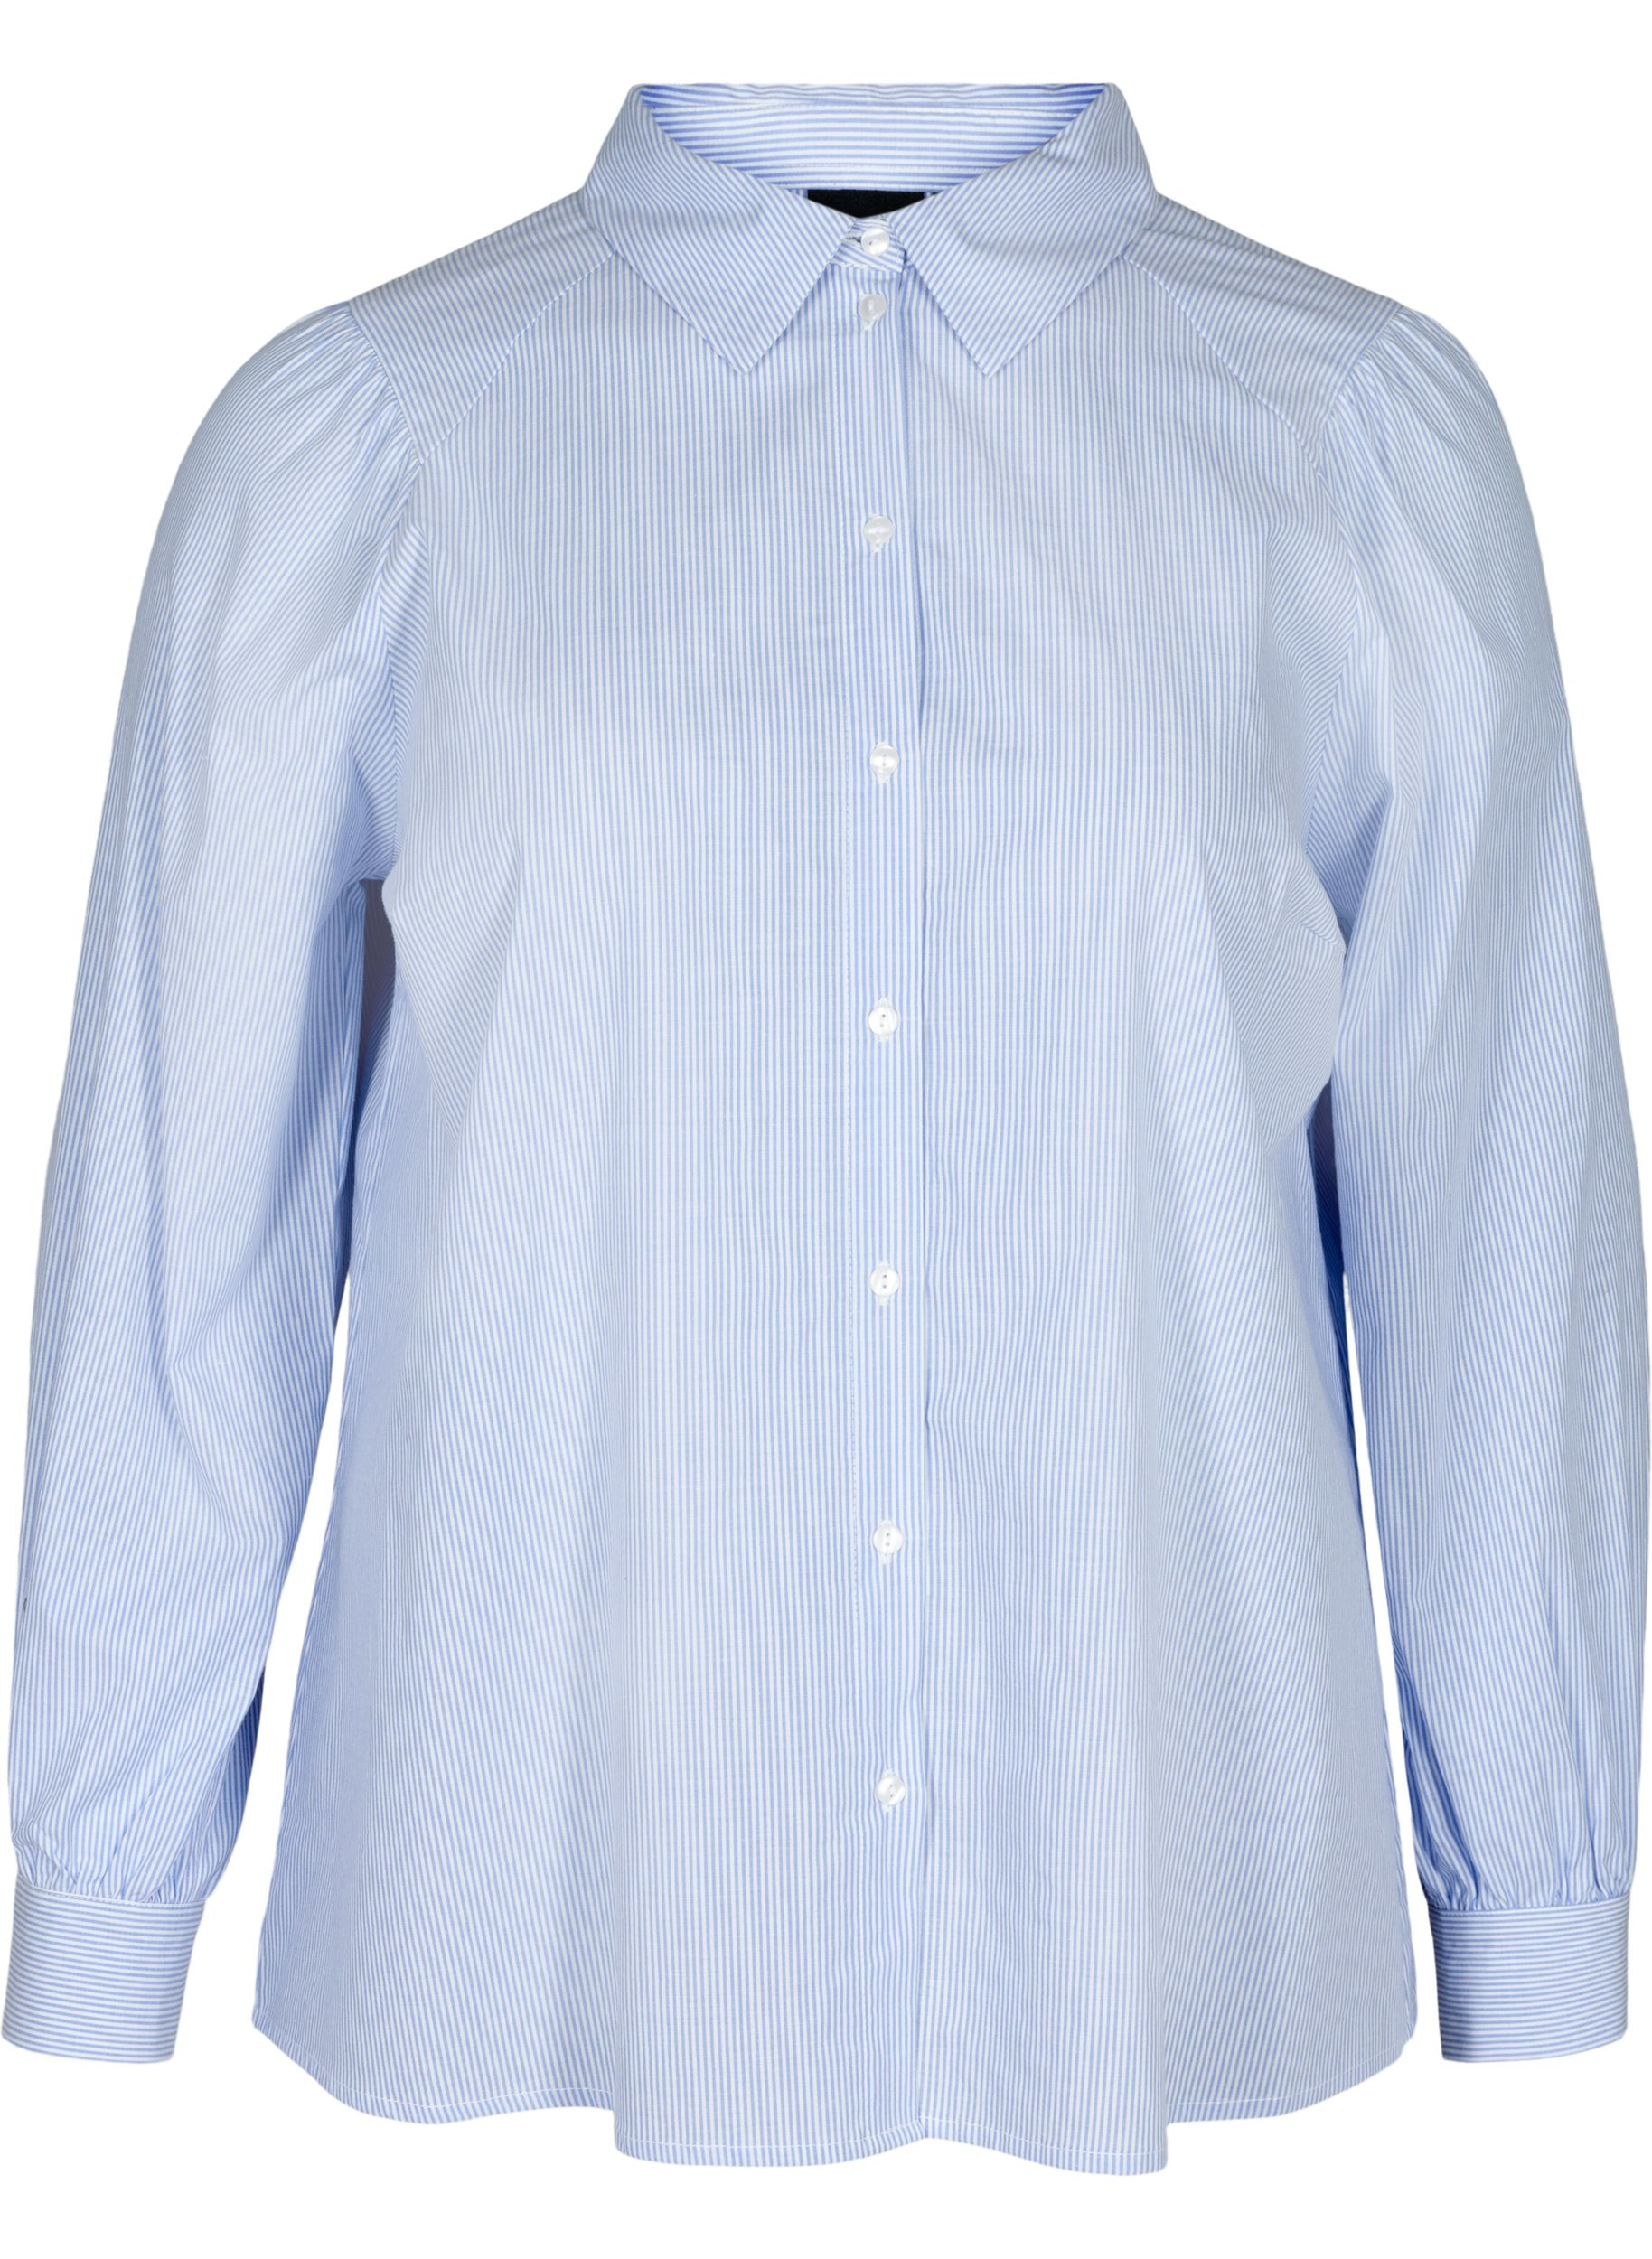 Gestreifte Bluse aus Baumwolle, White/Blue stripe, Packshot